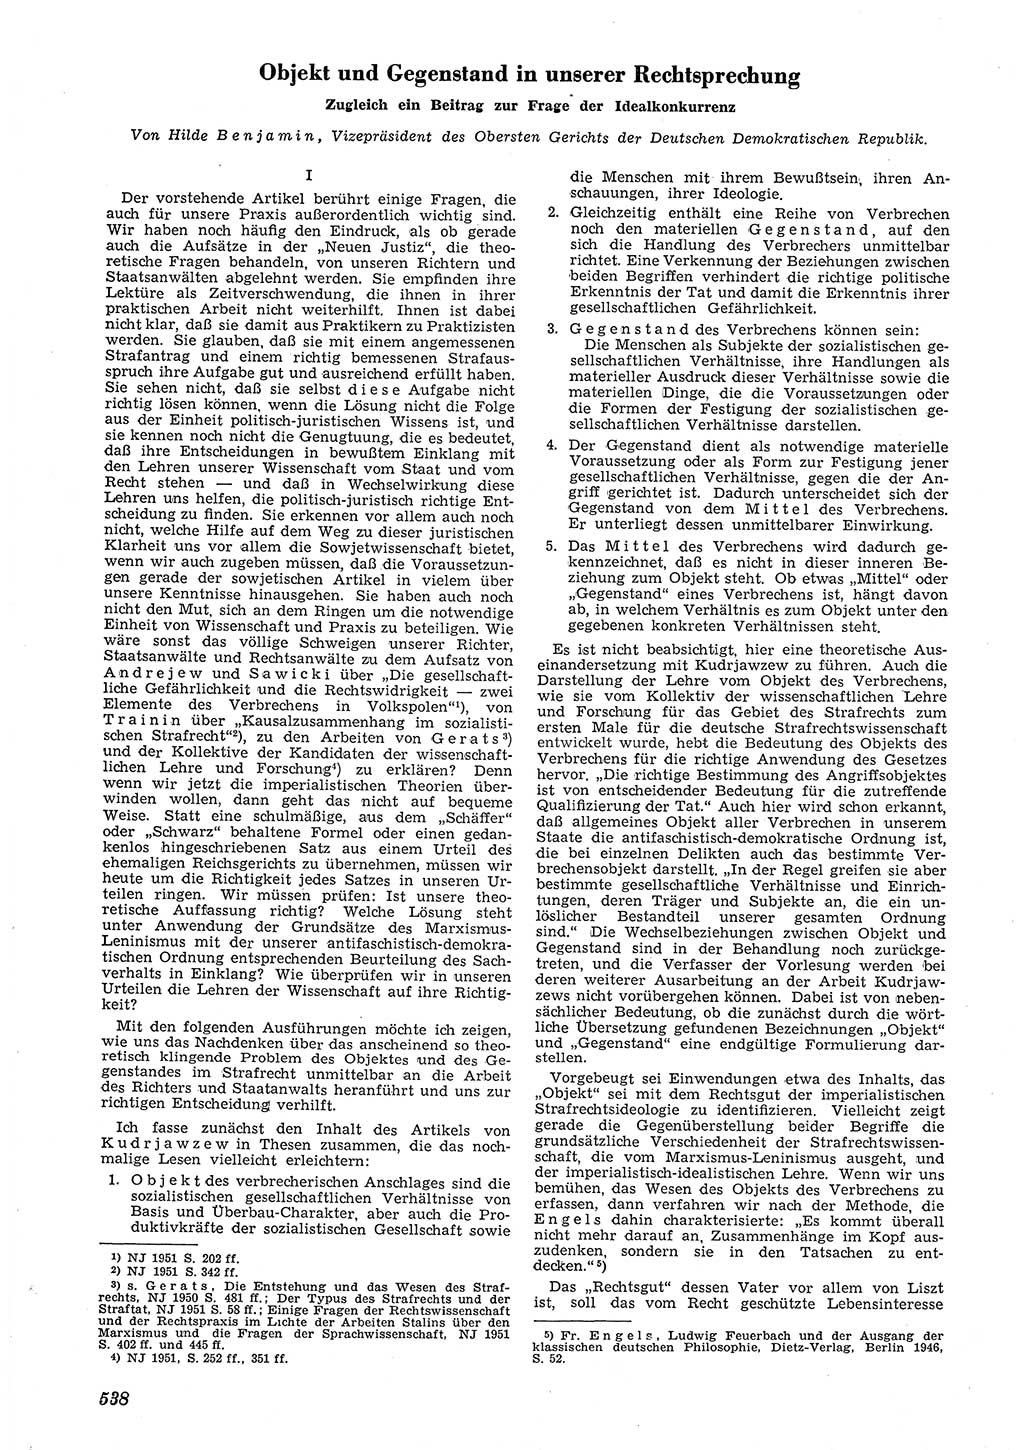 Neue Justiz (NJ), Zeitschrift für Recht und Rechtswissenschaft [Deutsche Demokratische Republik (DDR)], 5. Jahrgang 1951, Seite 538 (NJ DDR 1951, S. 538)